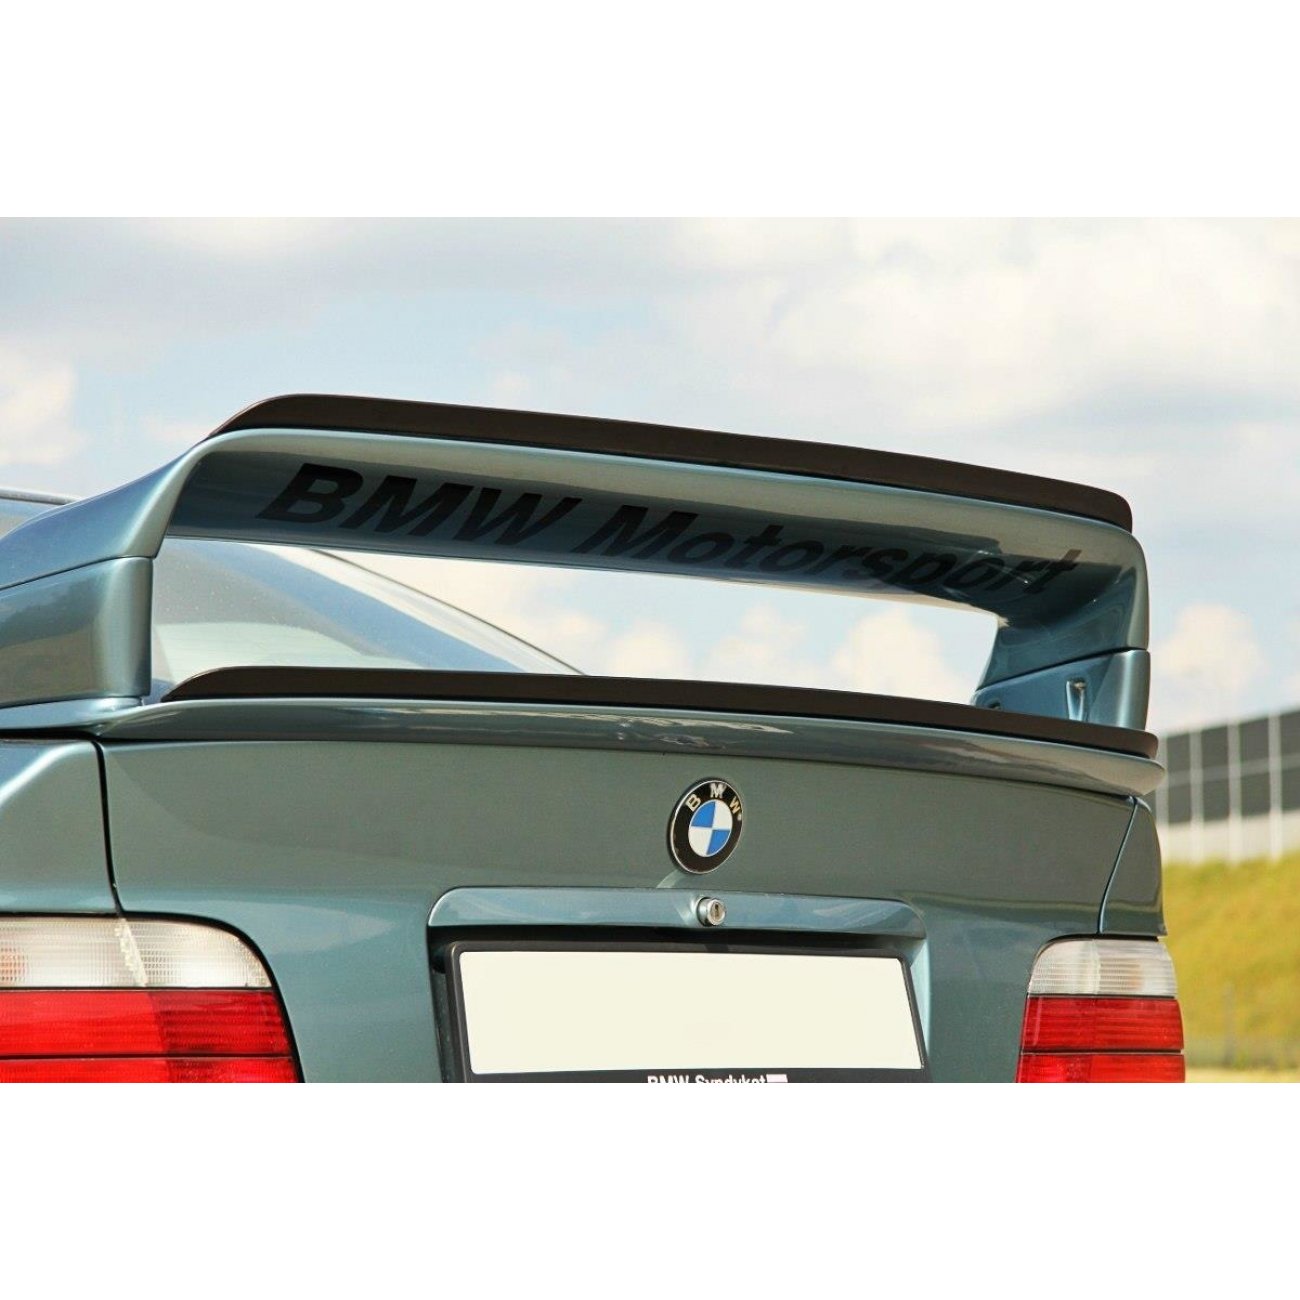 heckspoiler passend für BMW E90 3er, Tuning SPOILER CARBON Cover Abrisskante